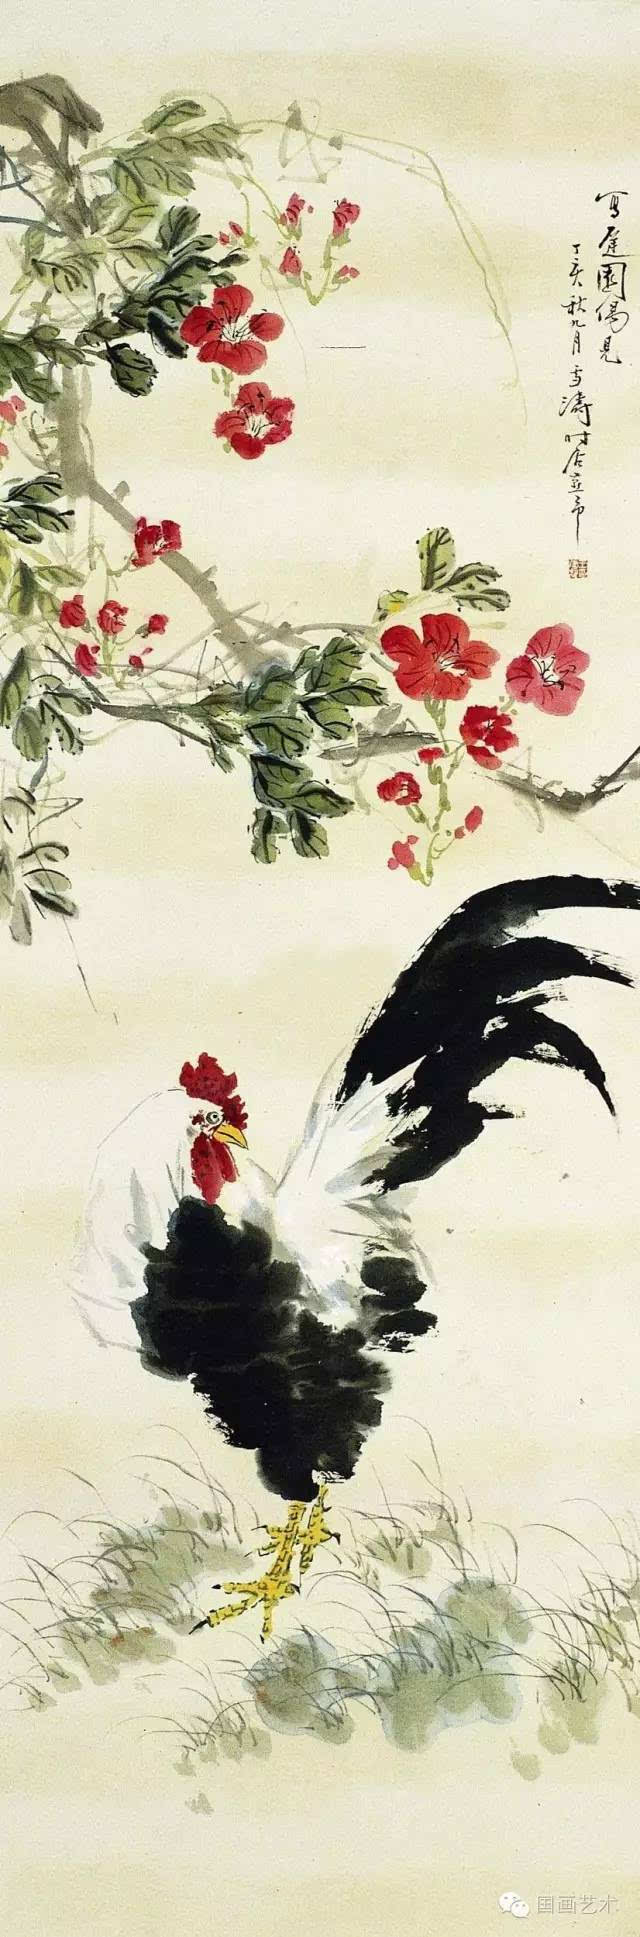 王雪涛丨画鸡